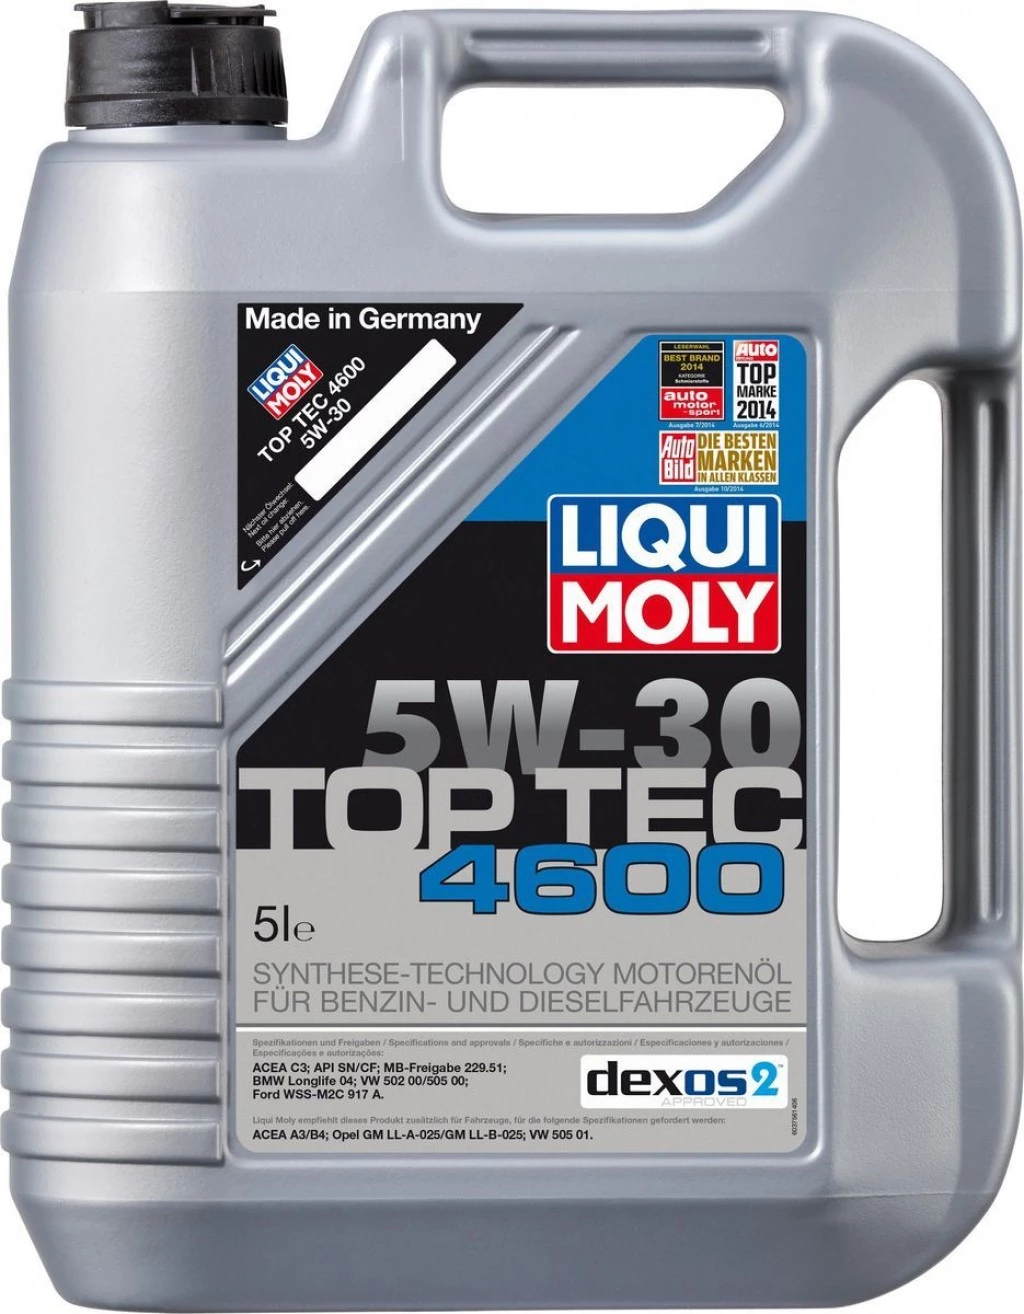 Моторное масло Liqui Moly Top Tec 4600 5W-30 синтетическое 5 л